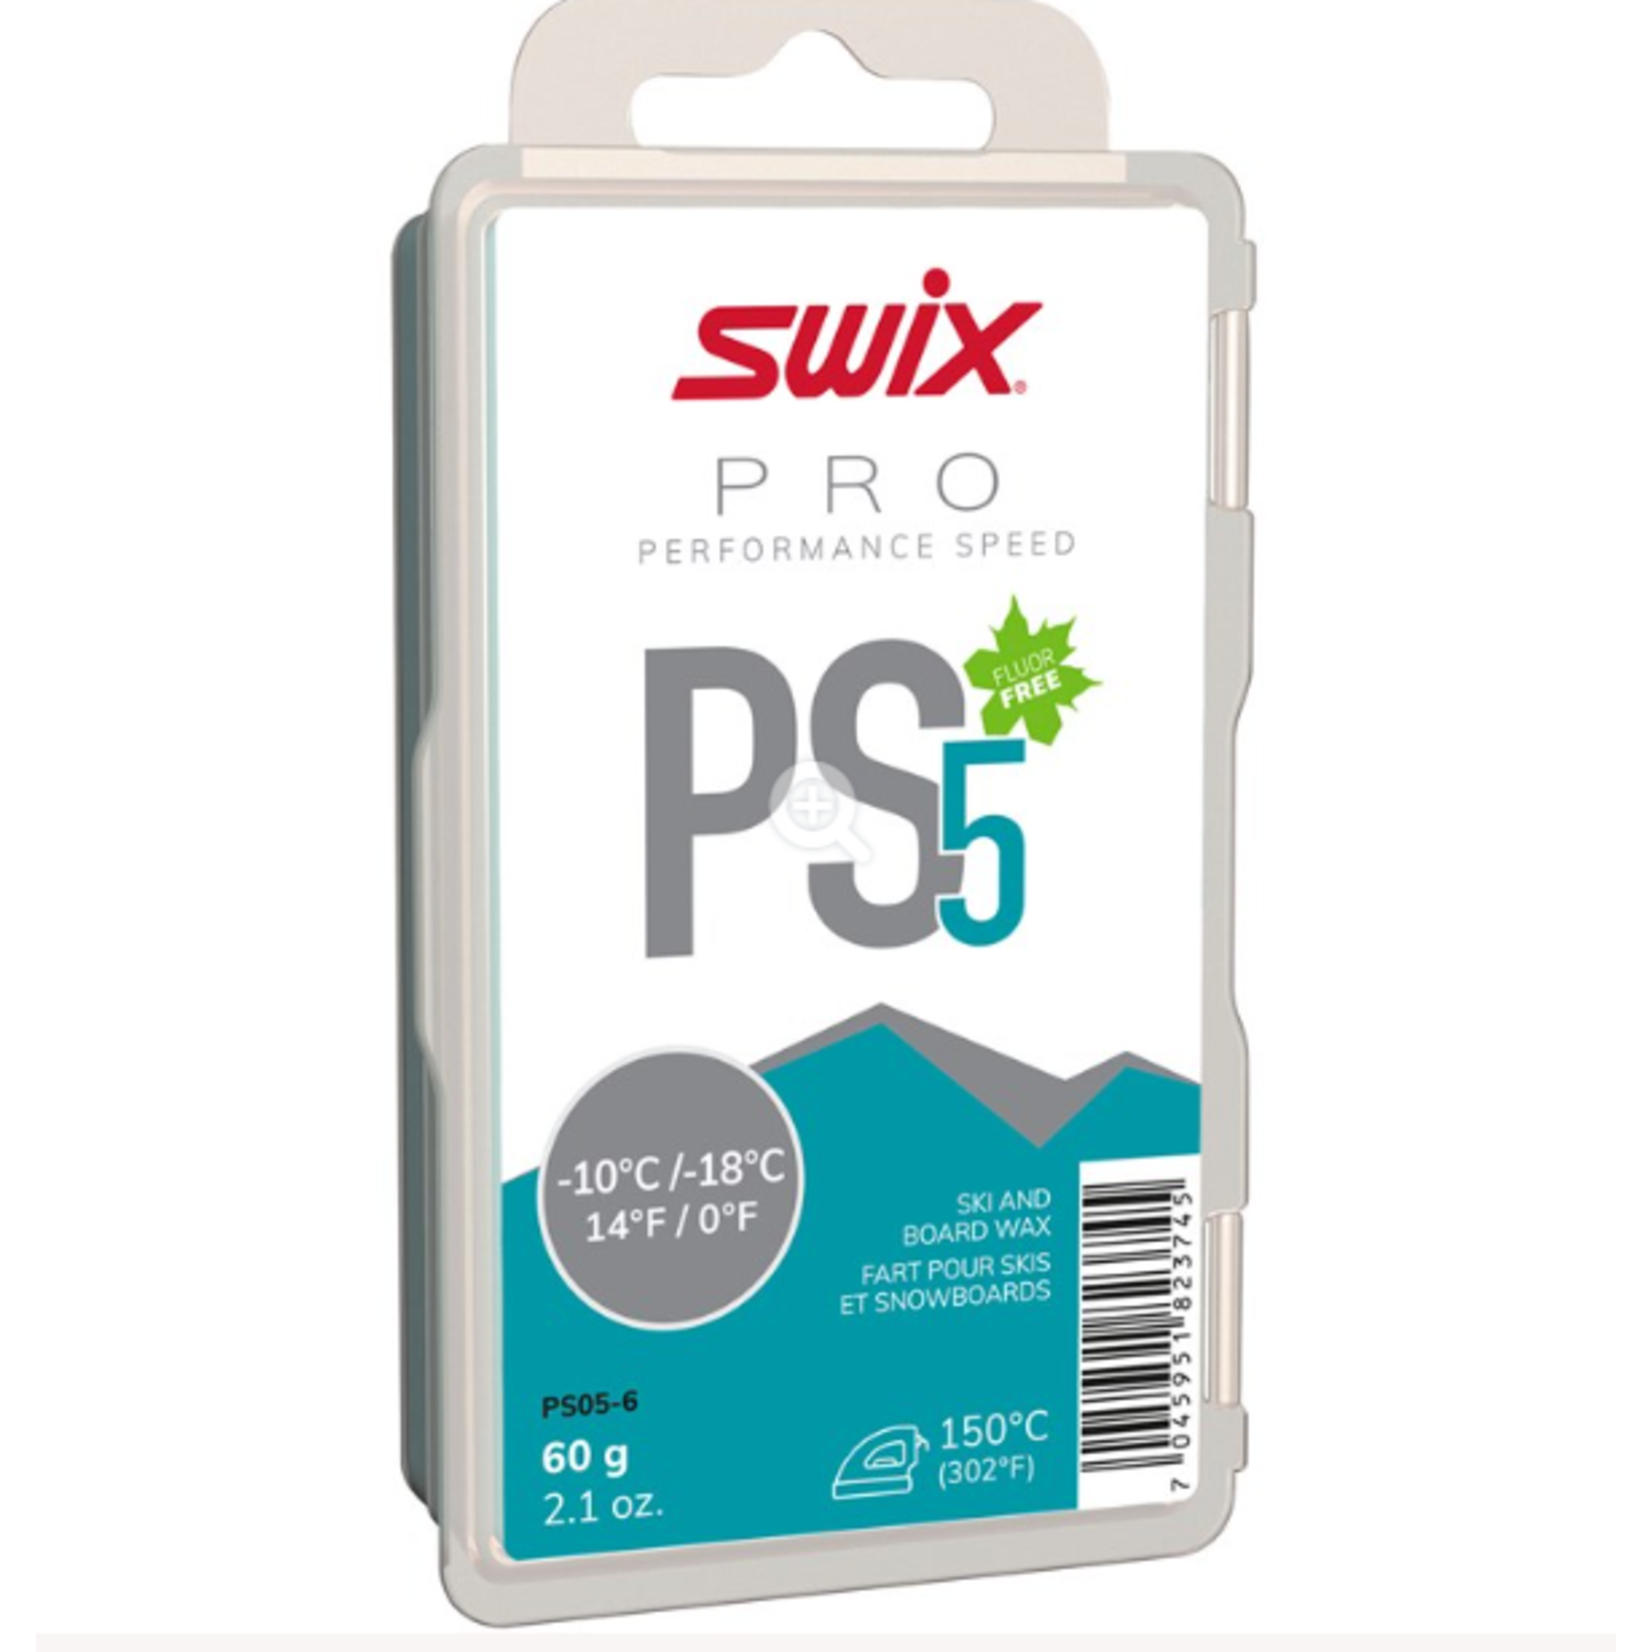 Swix Swix PS5 Turquoise, -10°C/-18°C, 60g